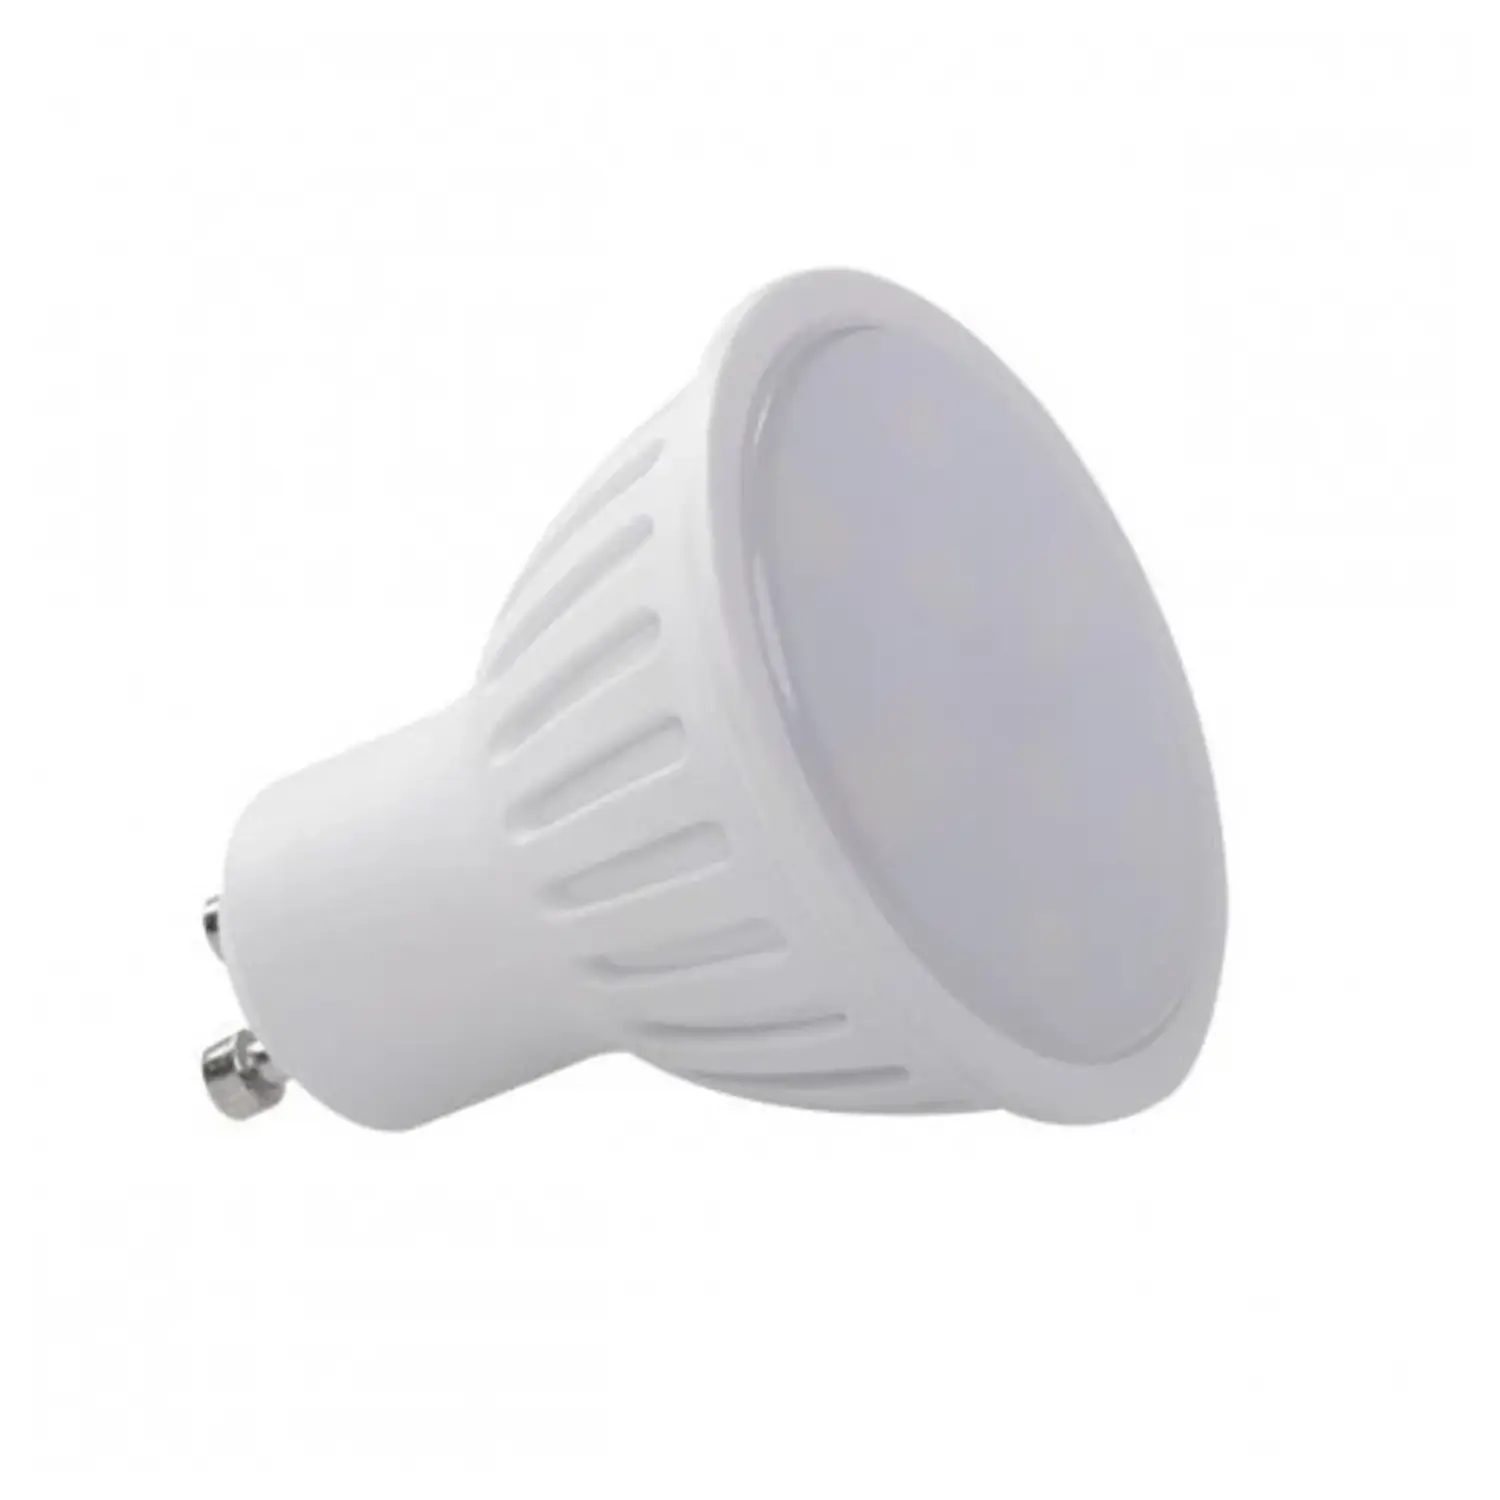 immagine del prodotto lampadina led lampada tomi faretti gu10 5 watt bianco caldo